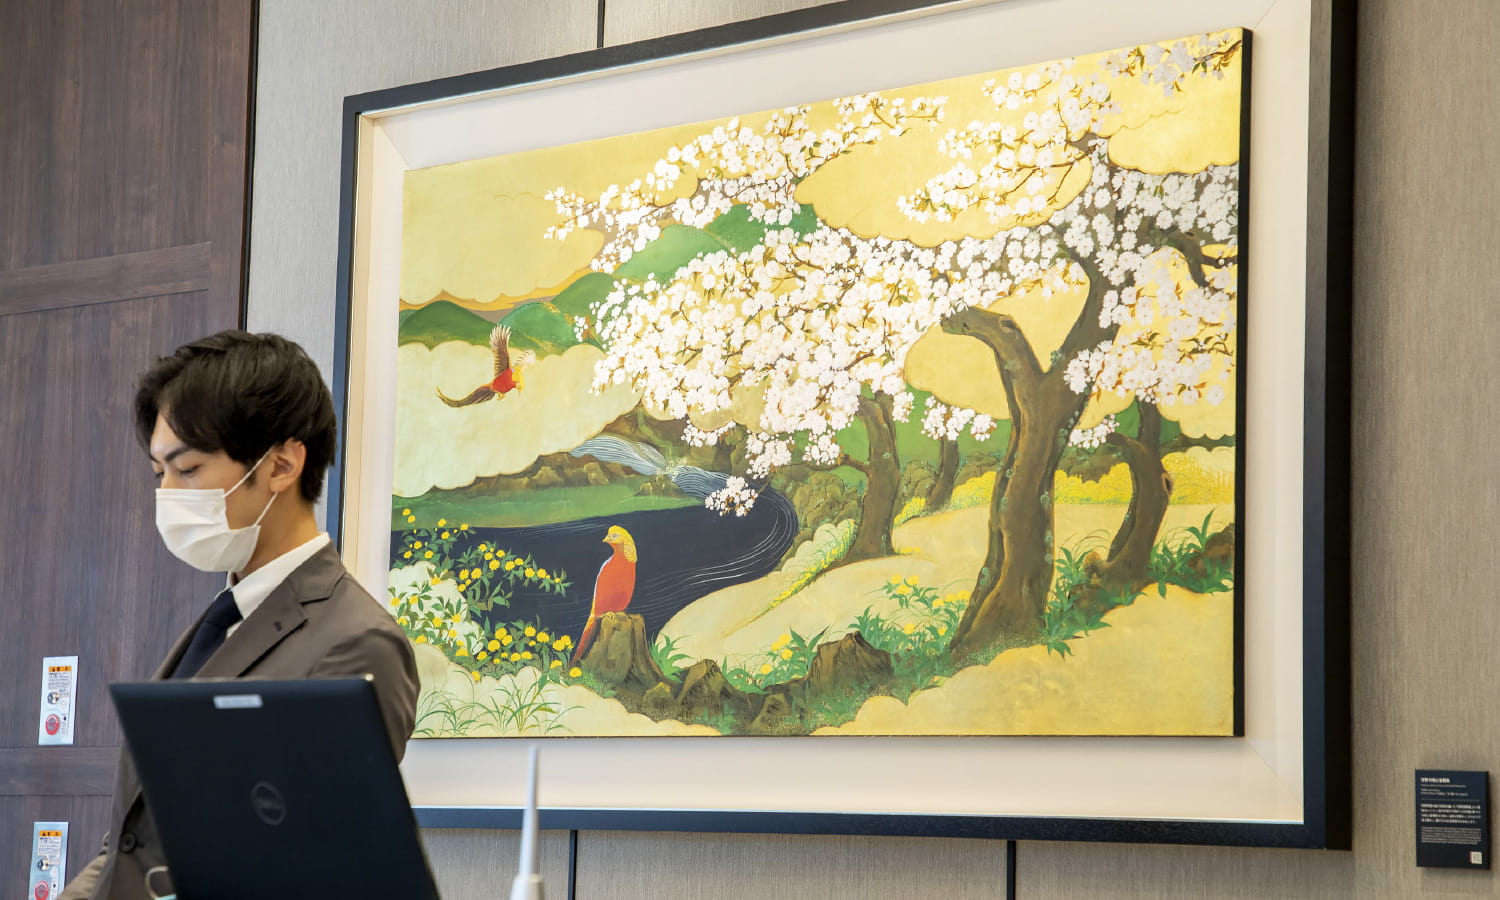 フロントでは、狩野常信が描いた「吉野図屏風」の八重桜をヒントに現代作家が手掛けた日本画アート「吉野の桜と金鶏鳥」がお出迎え